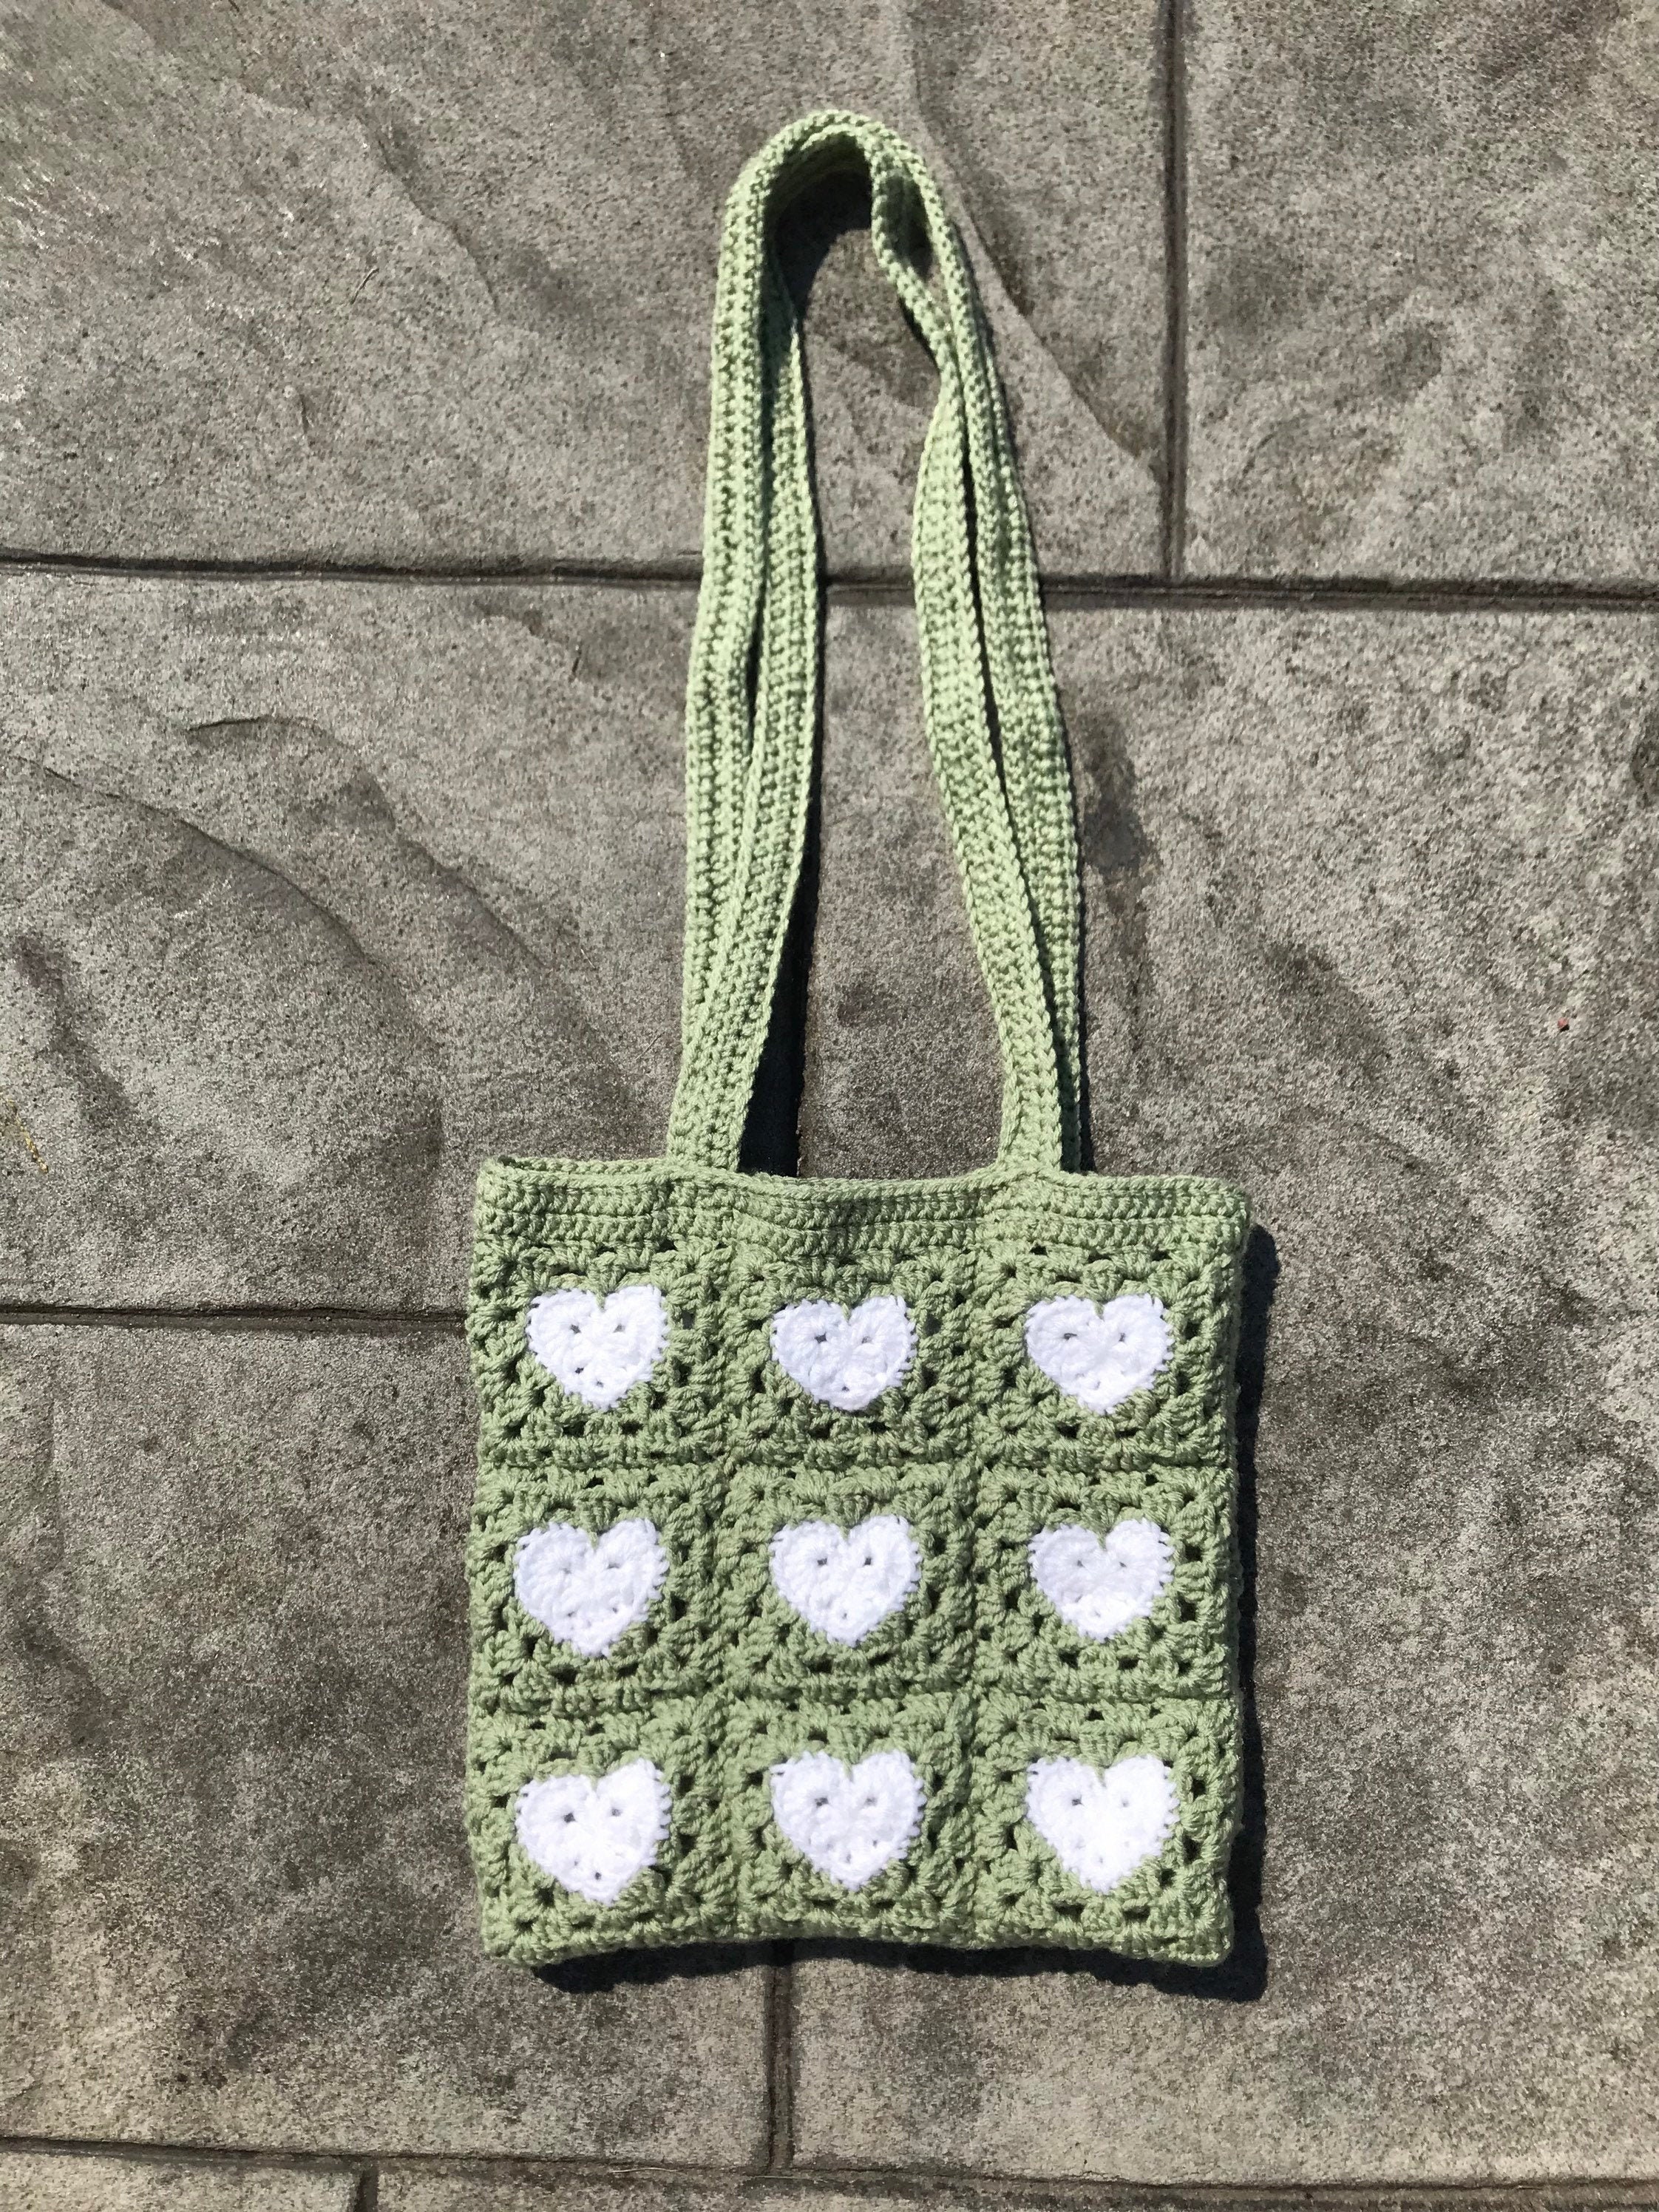 granny square heart tote bag 💞 : r/crochet